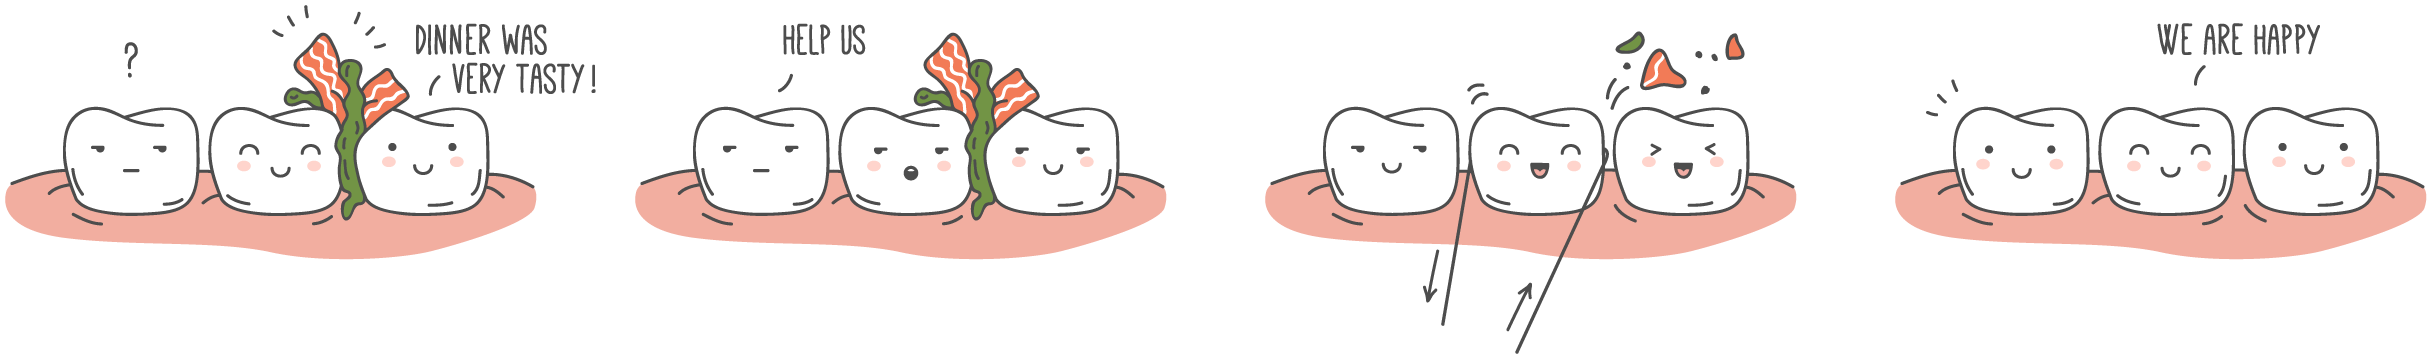 dental-floss-illustration